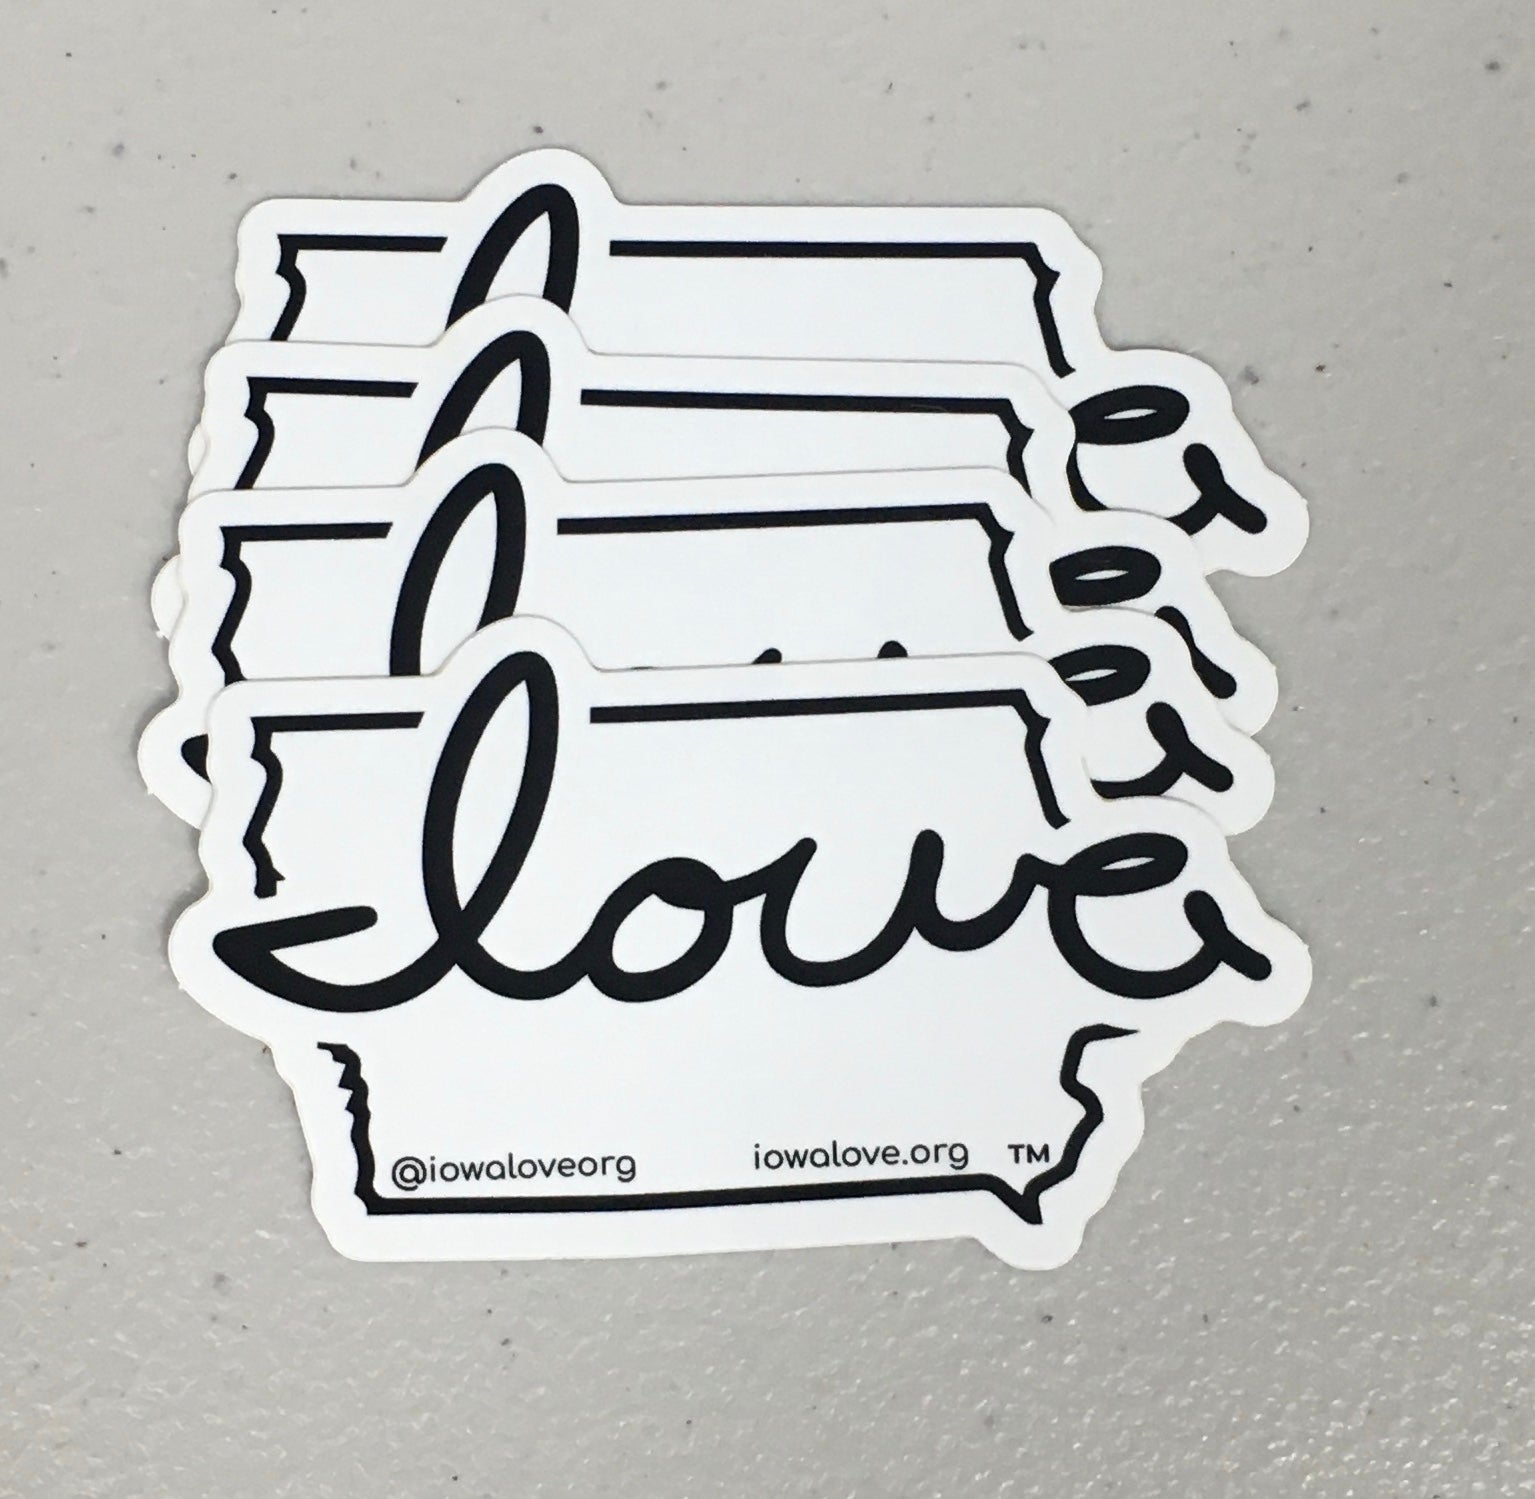 "Iowa love" White & Black Sticker